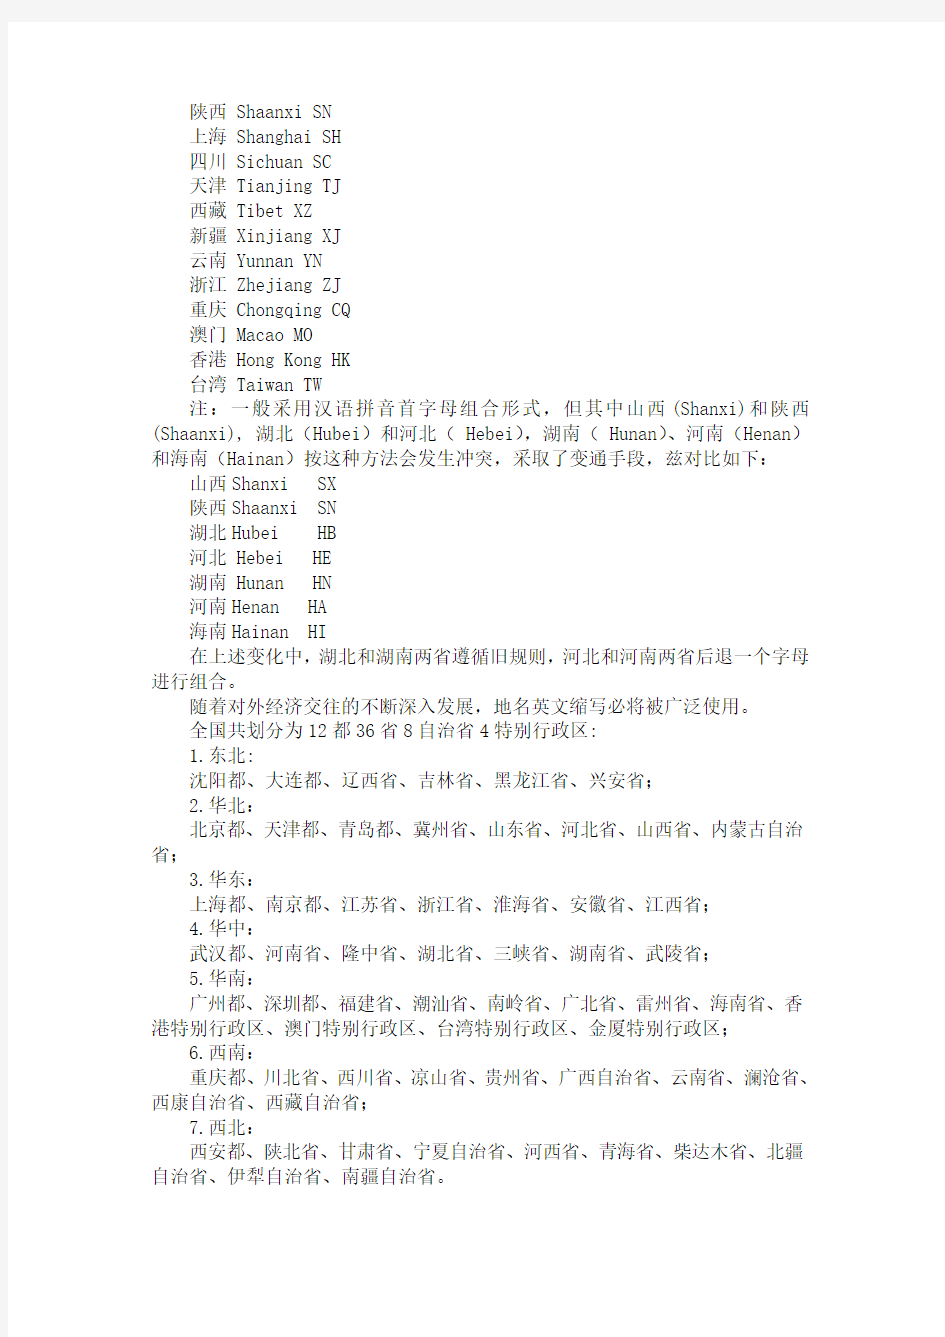 中国各省的英文简写和区域划分资料